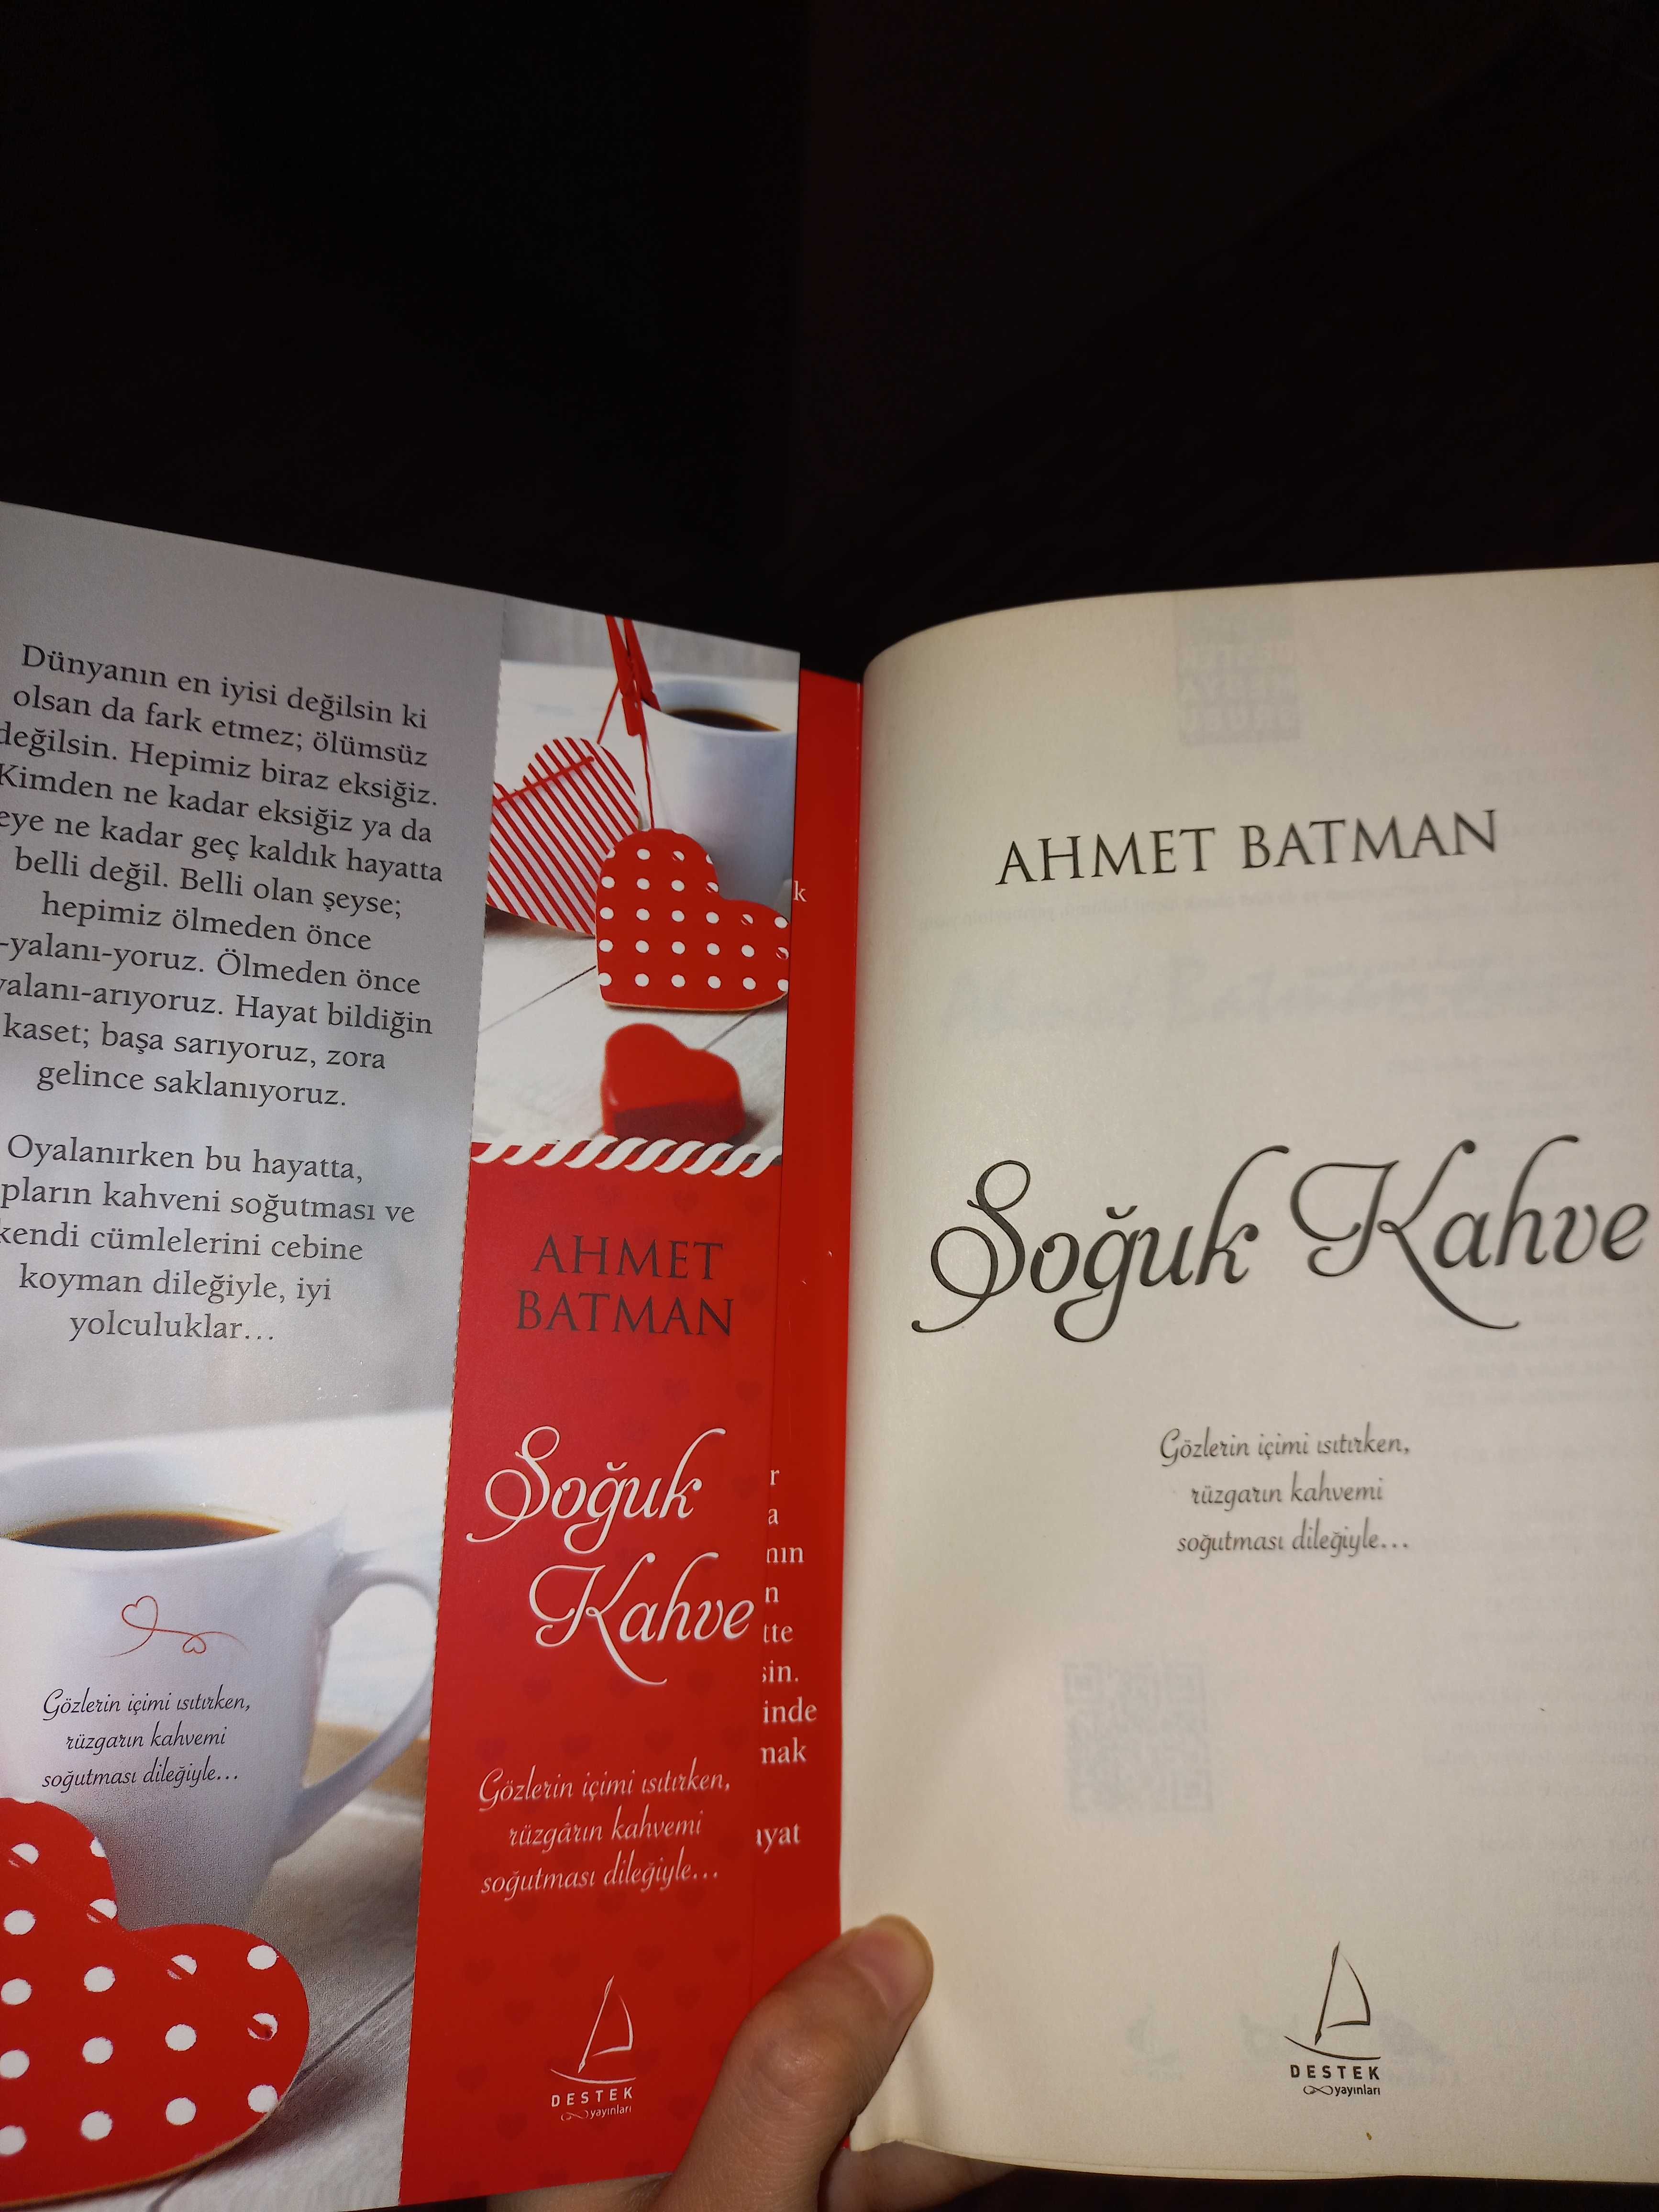 Турецкая книга на турецком языке "Ahmet Batman - Soğuk kahve"